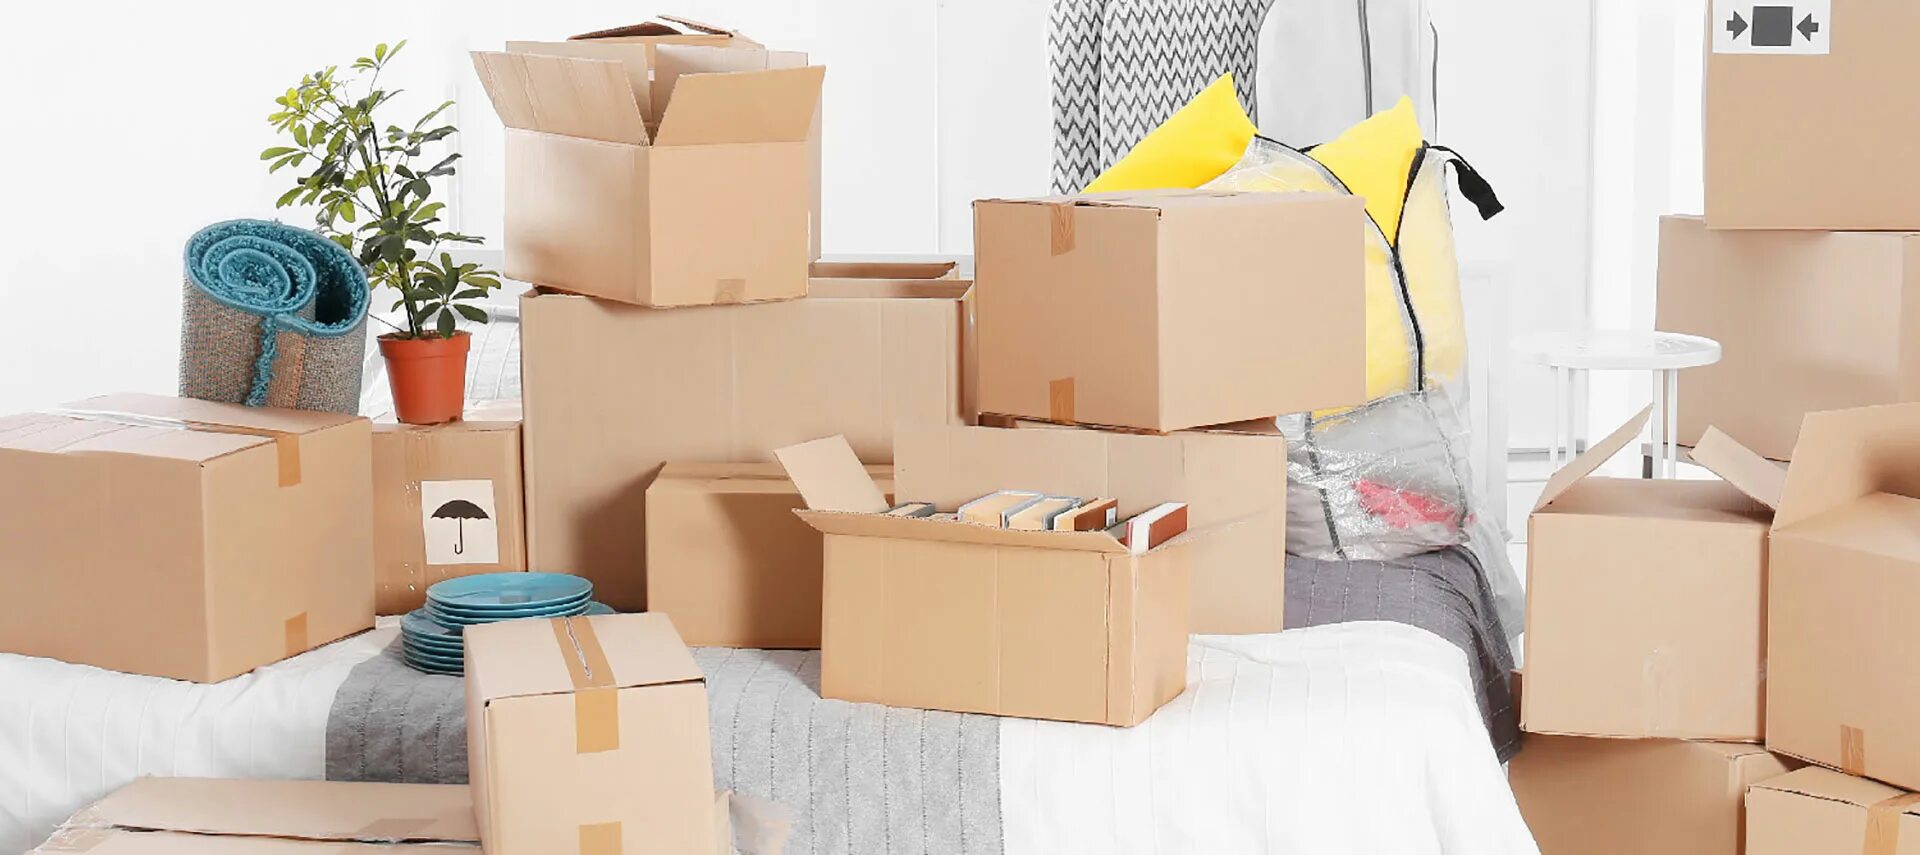 Перевоз квартиры. Переезд вещи. Коробки в квартире. Комната с коробками. Коробки с вещами.